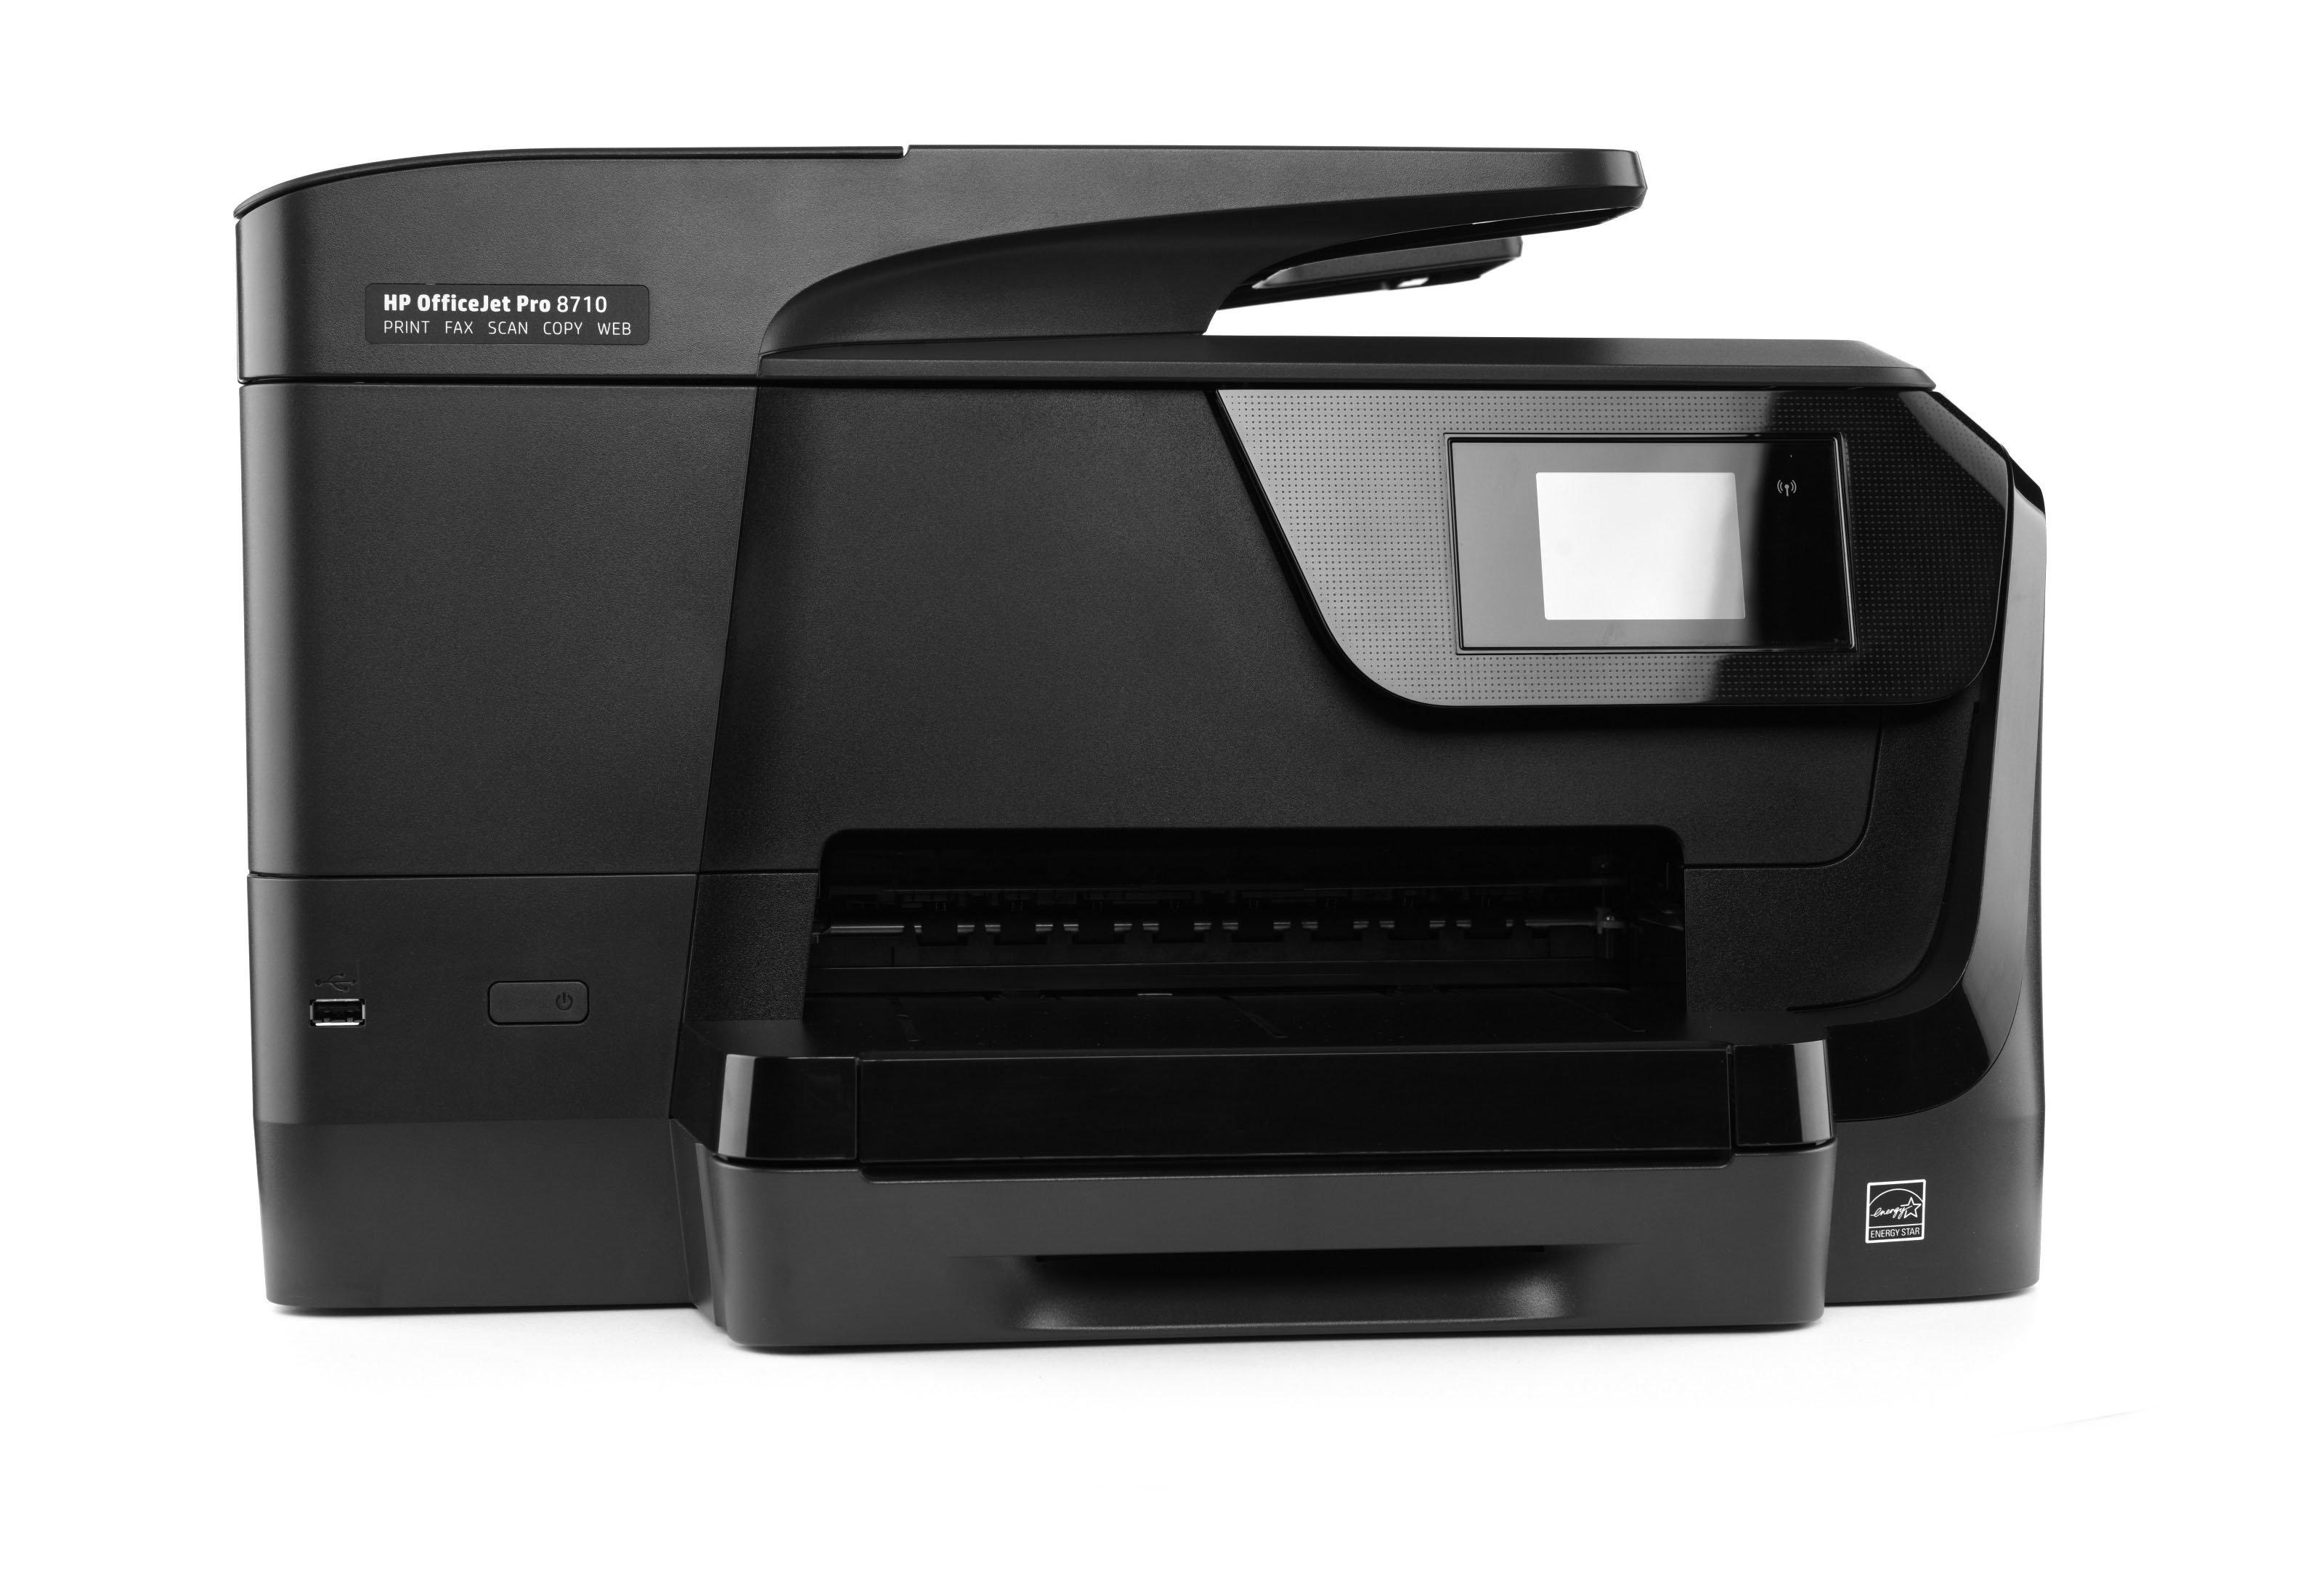 HP OfficeJet Pro 8710 All-in-One Printer price in Saudi Arabia | Stores Saudi Arabia kanbkam